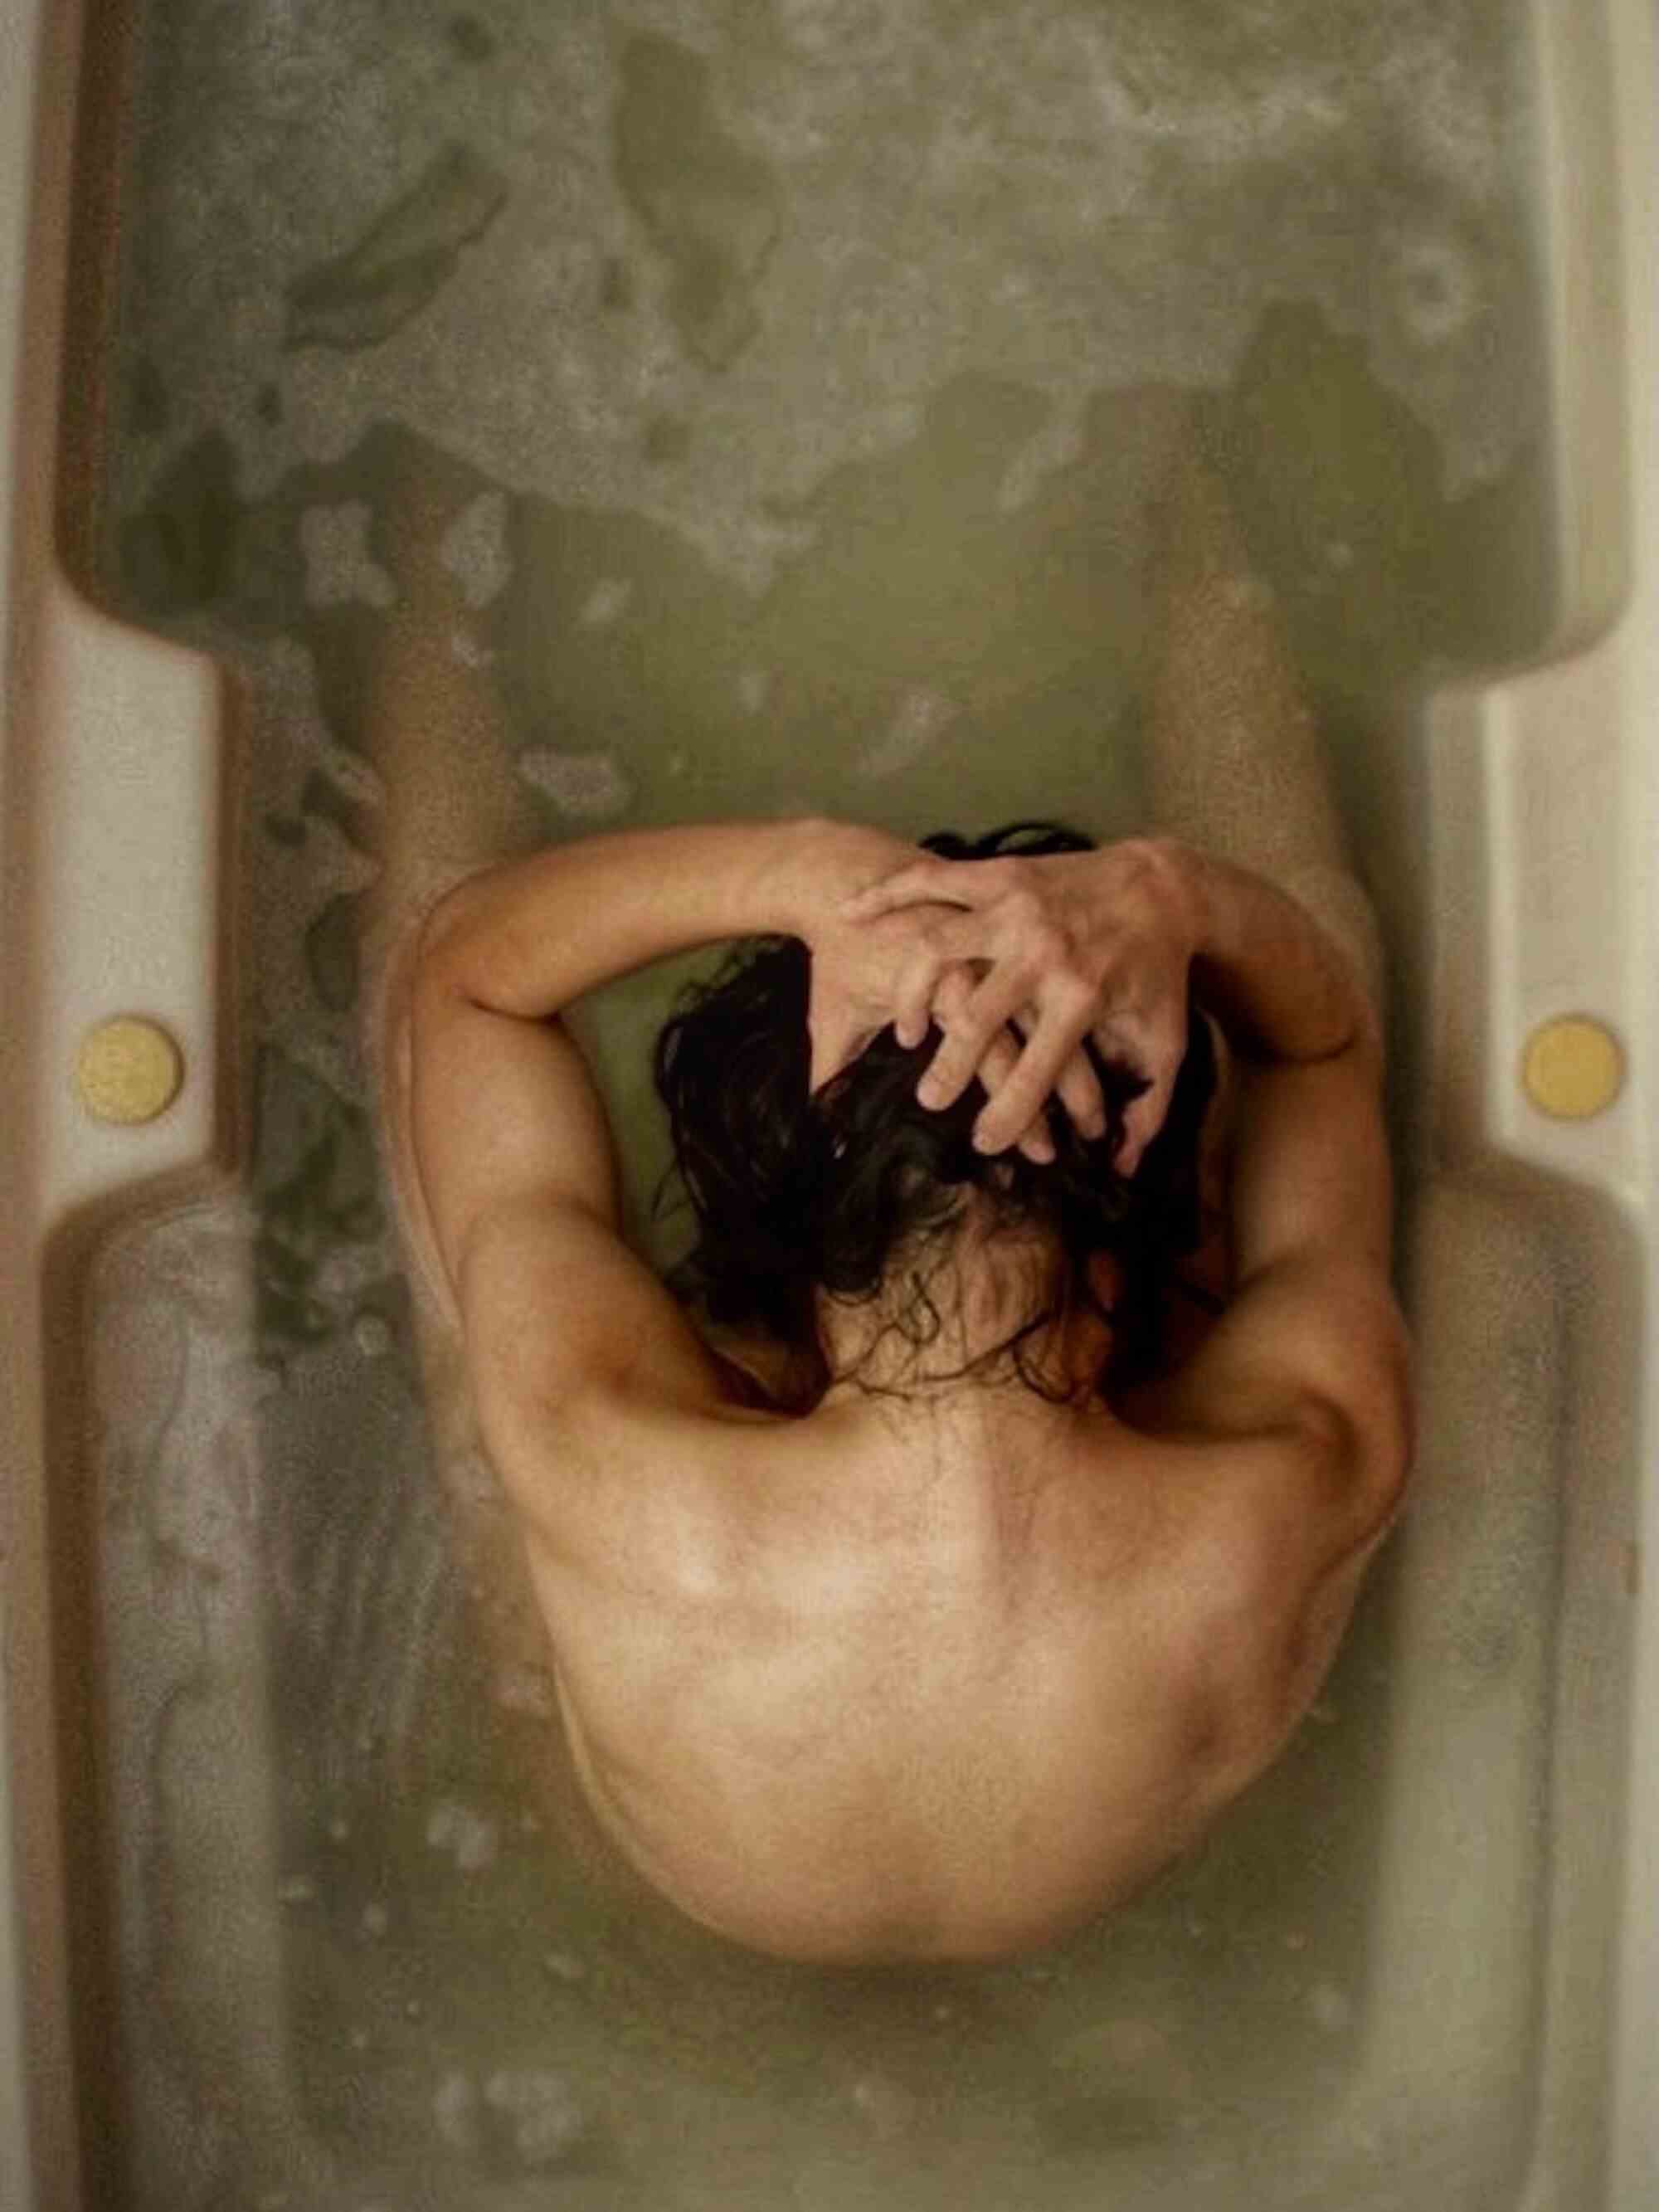 Eine Person von oben gesehen, sitzt nackt in einer Badewanne, die Hände auf dem Kopf.